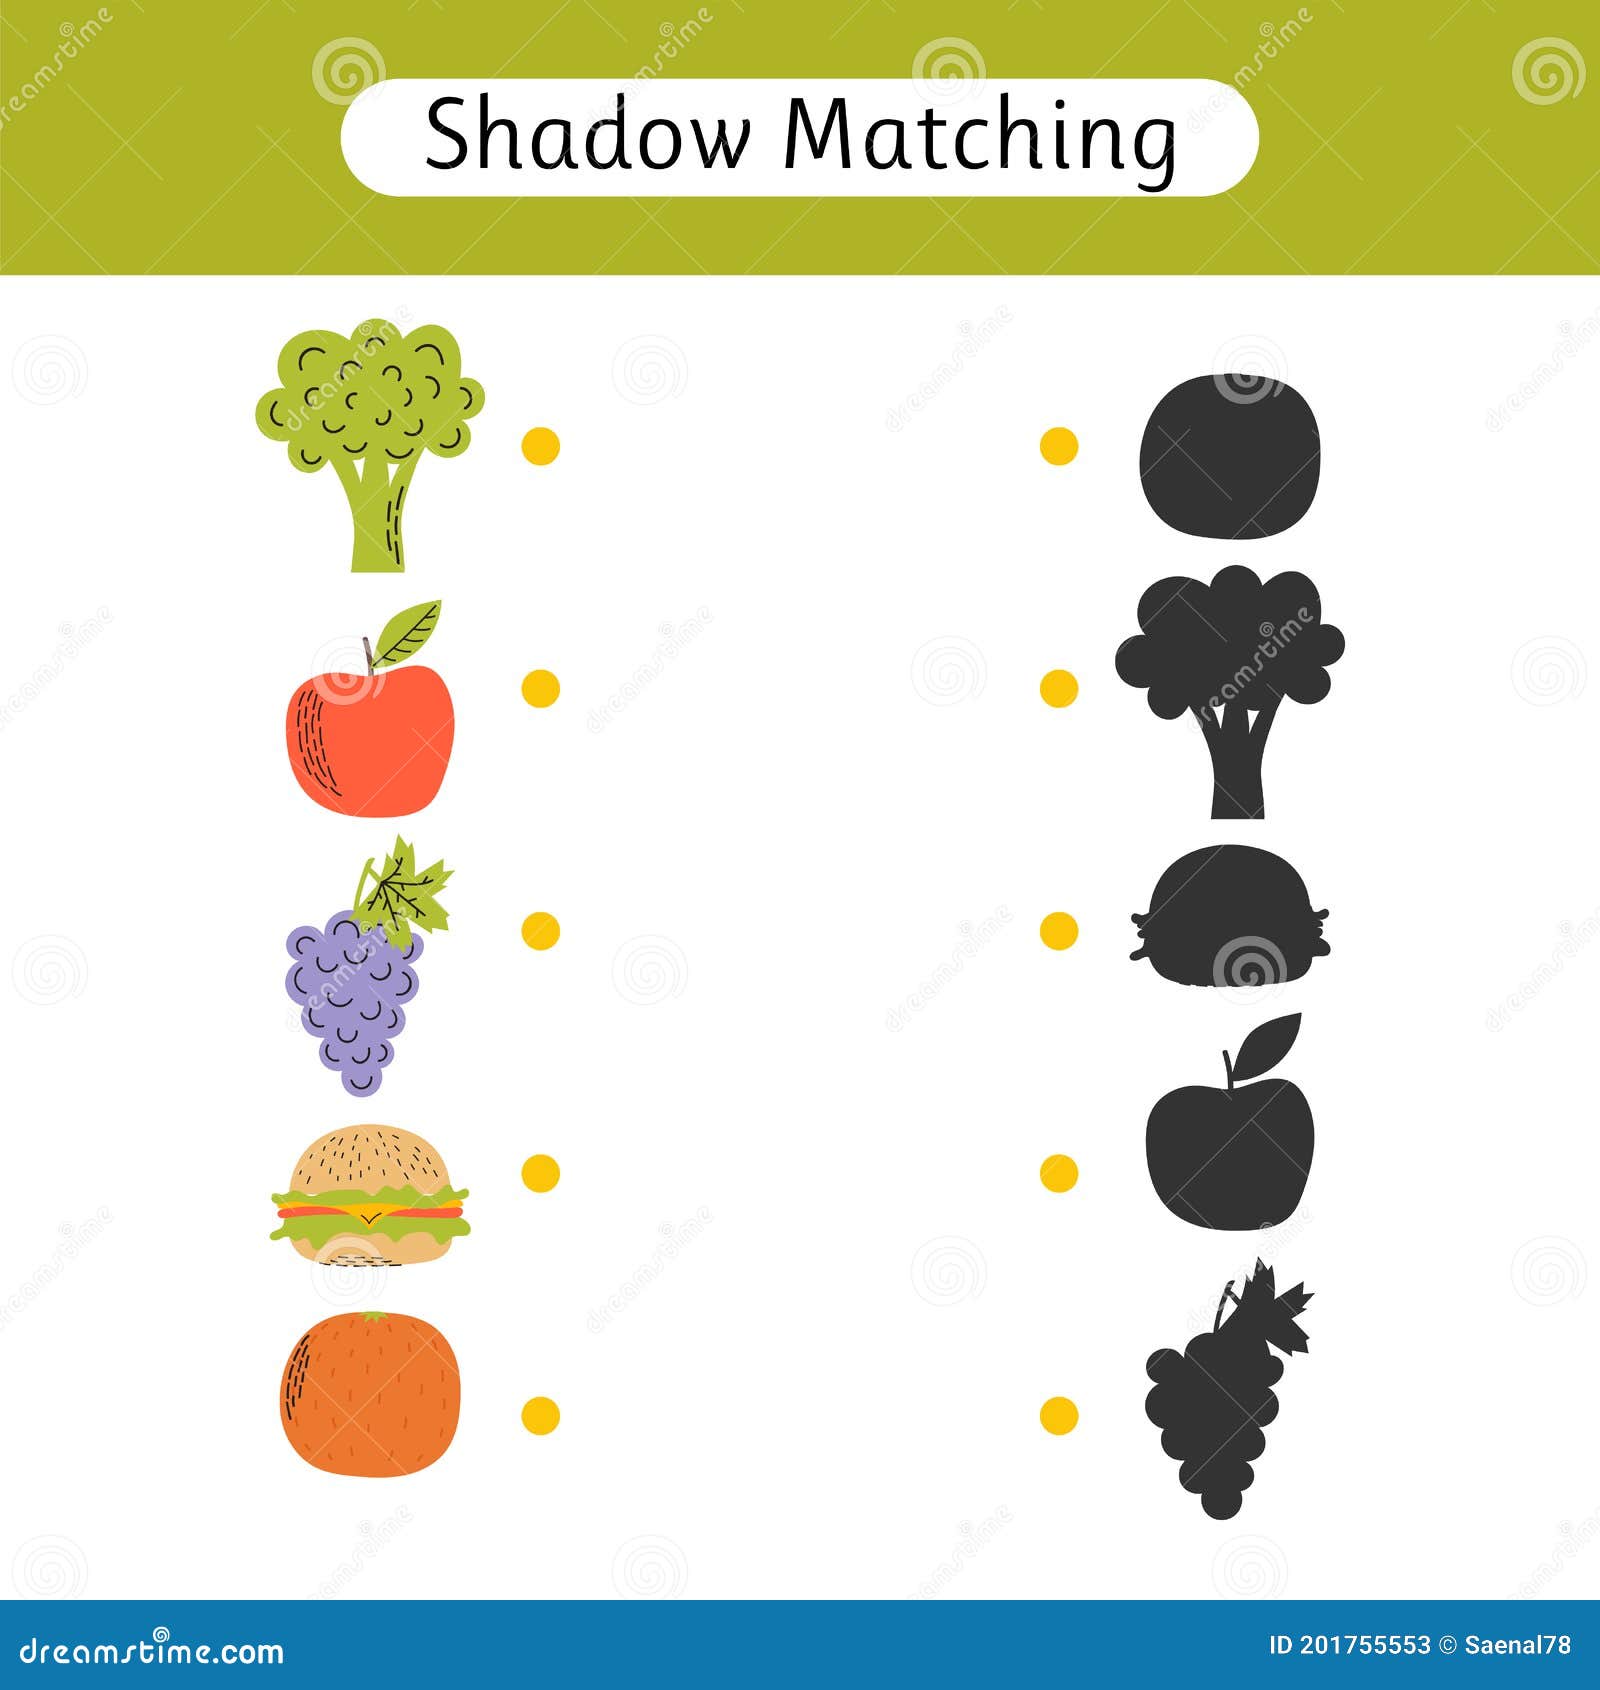 O jogo educacional para crianças encontra o conjunto de sombras